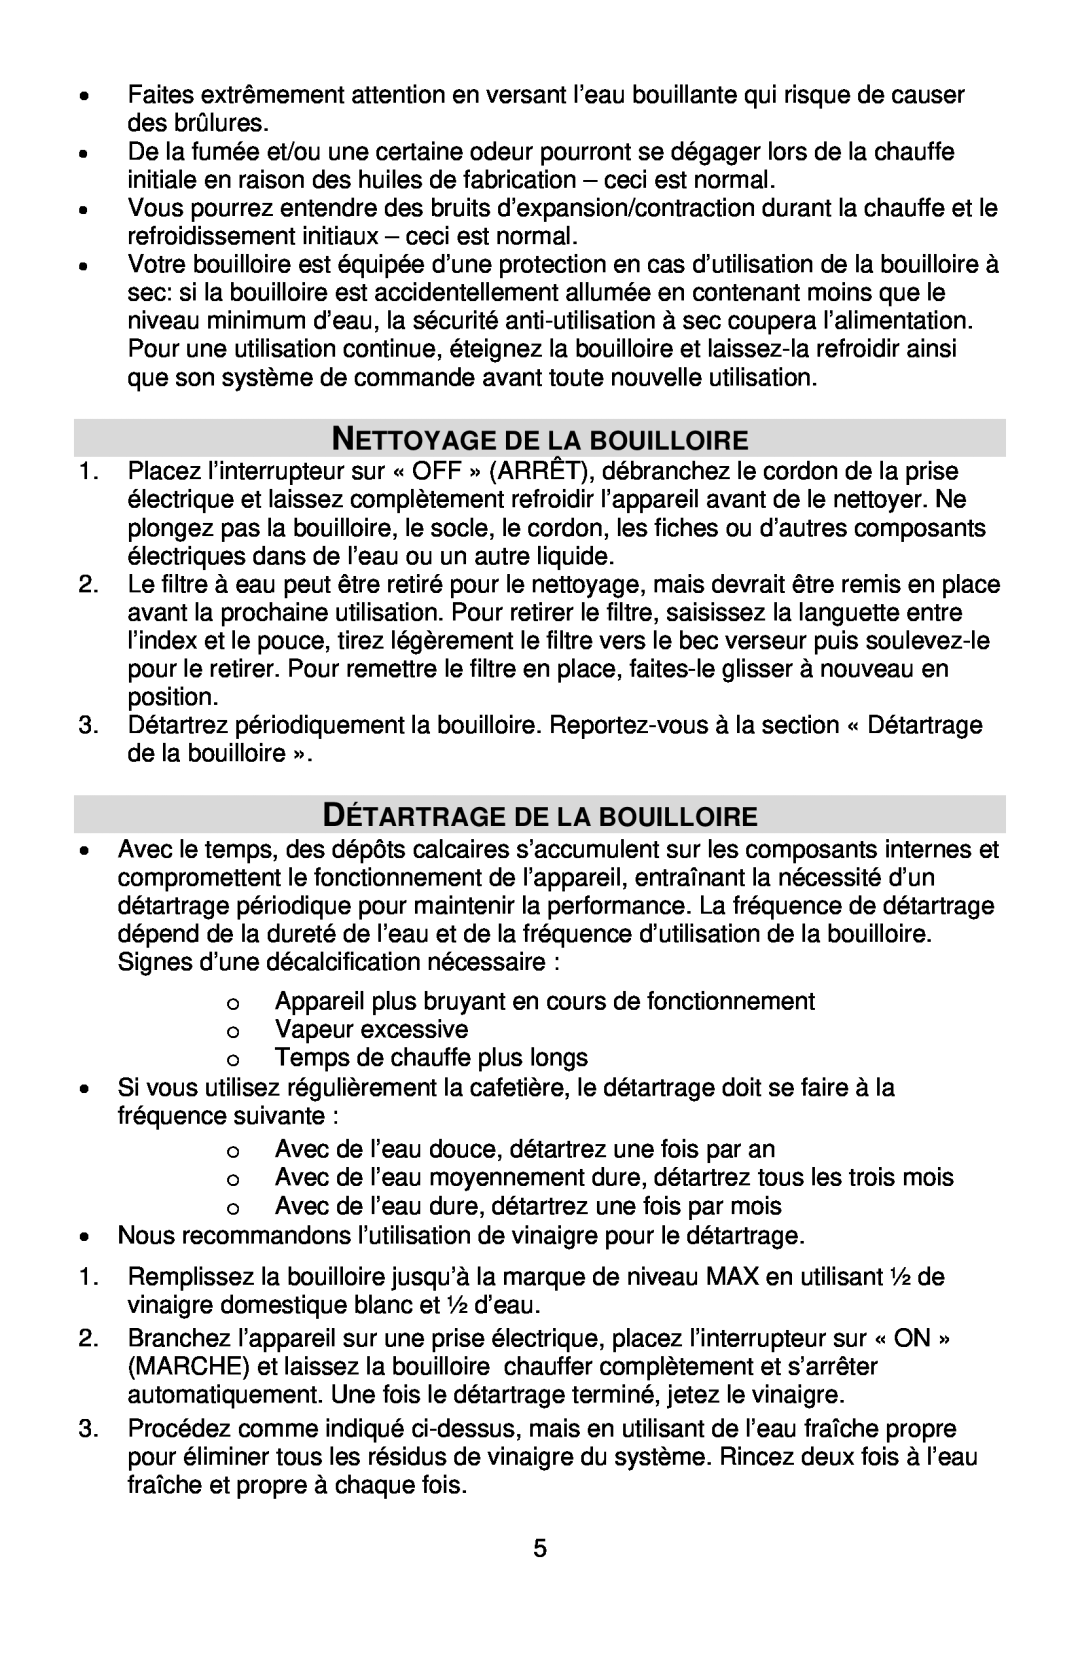 West Bend Kettle instruction manual Nettoyage De La Bouilloire, Détartrage De La Bouilloire 